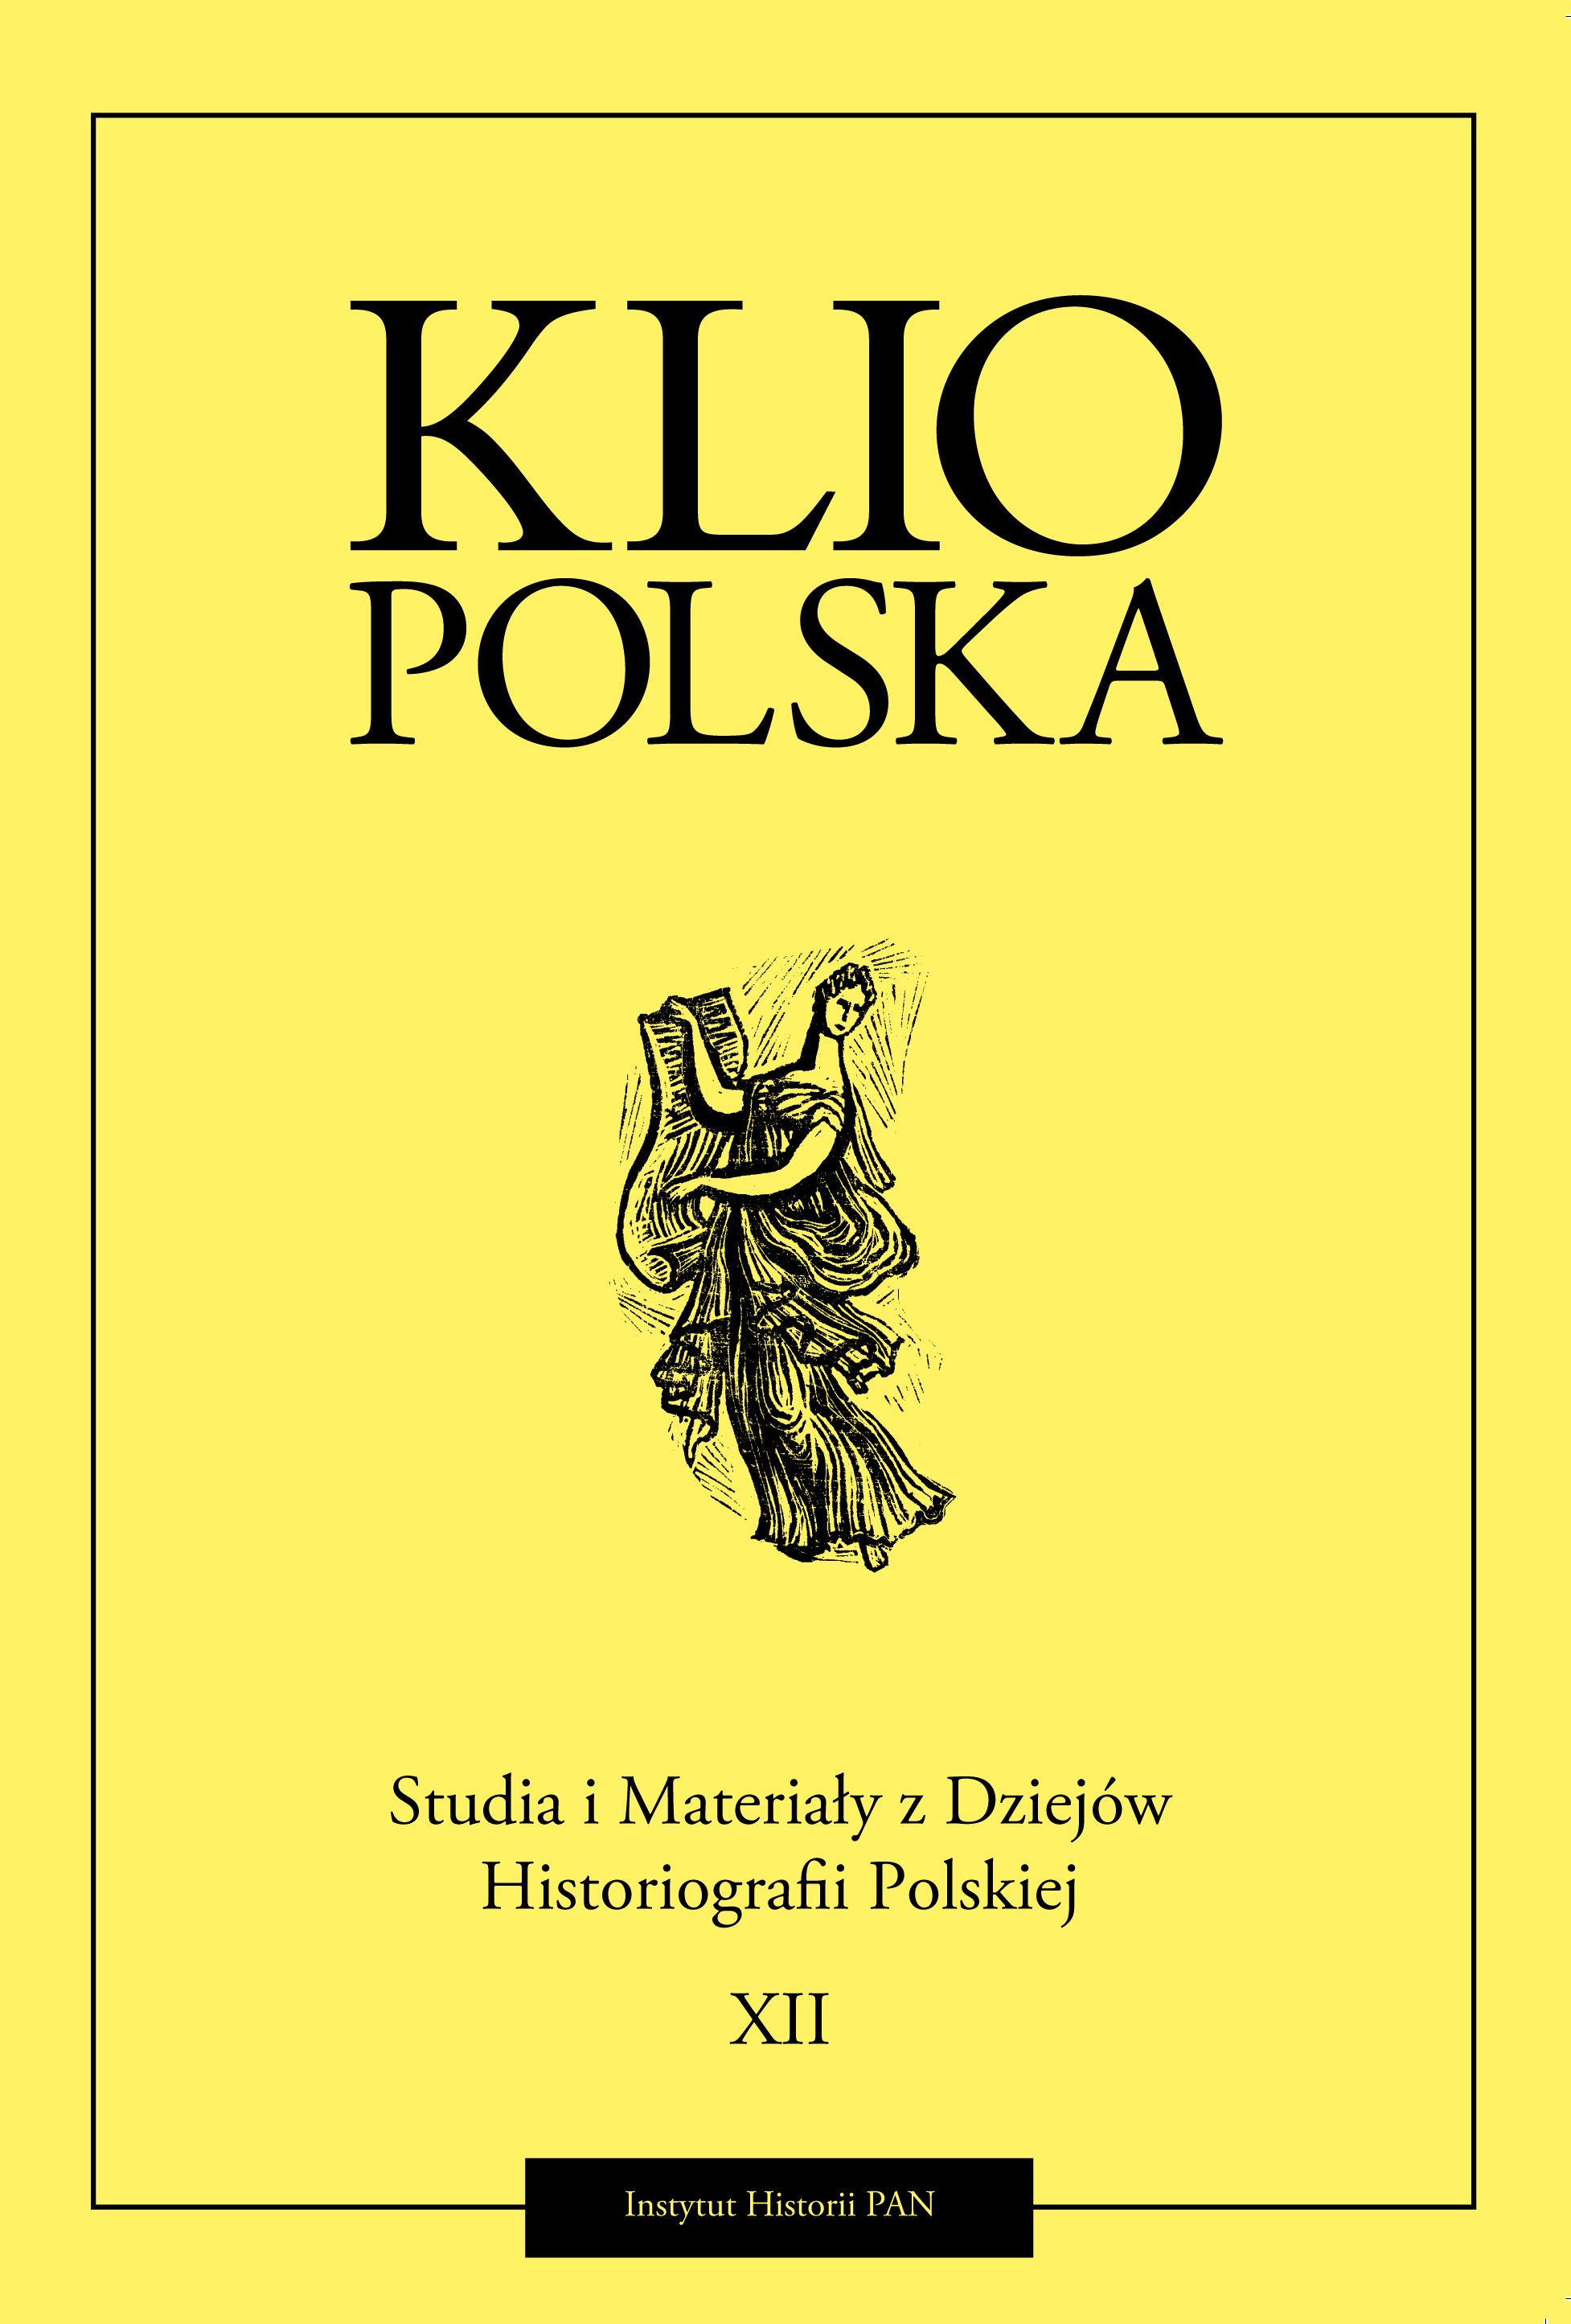 Okładka czasopisma "Klio Polska" Tom XII